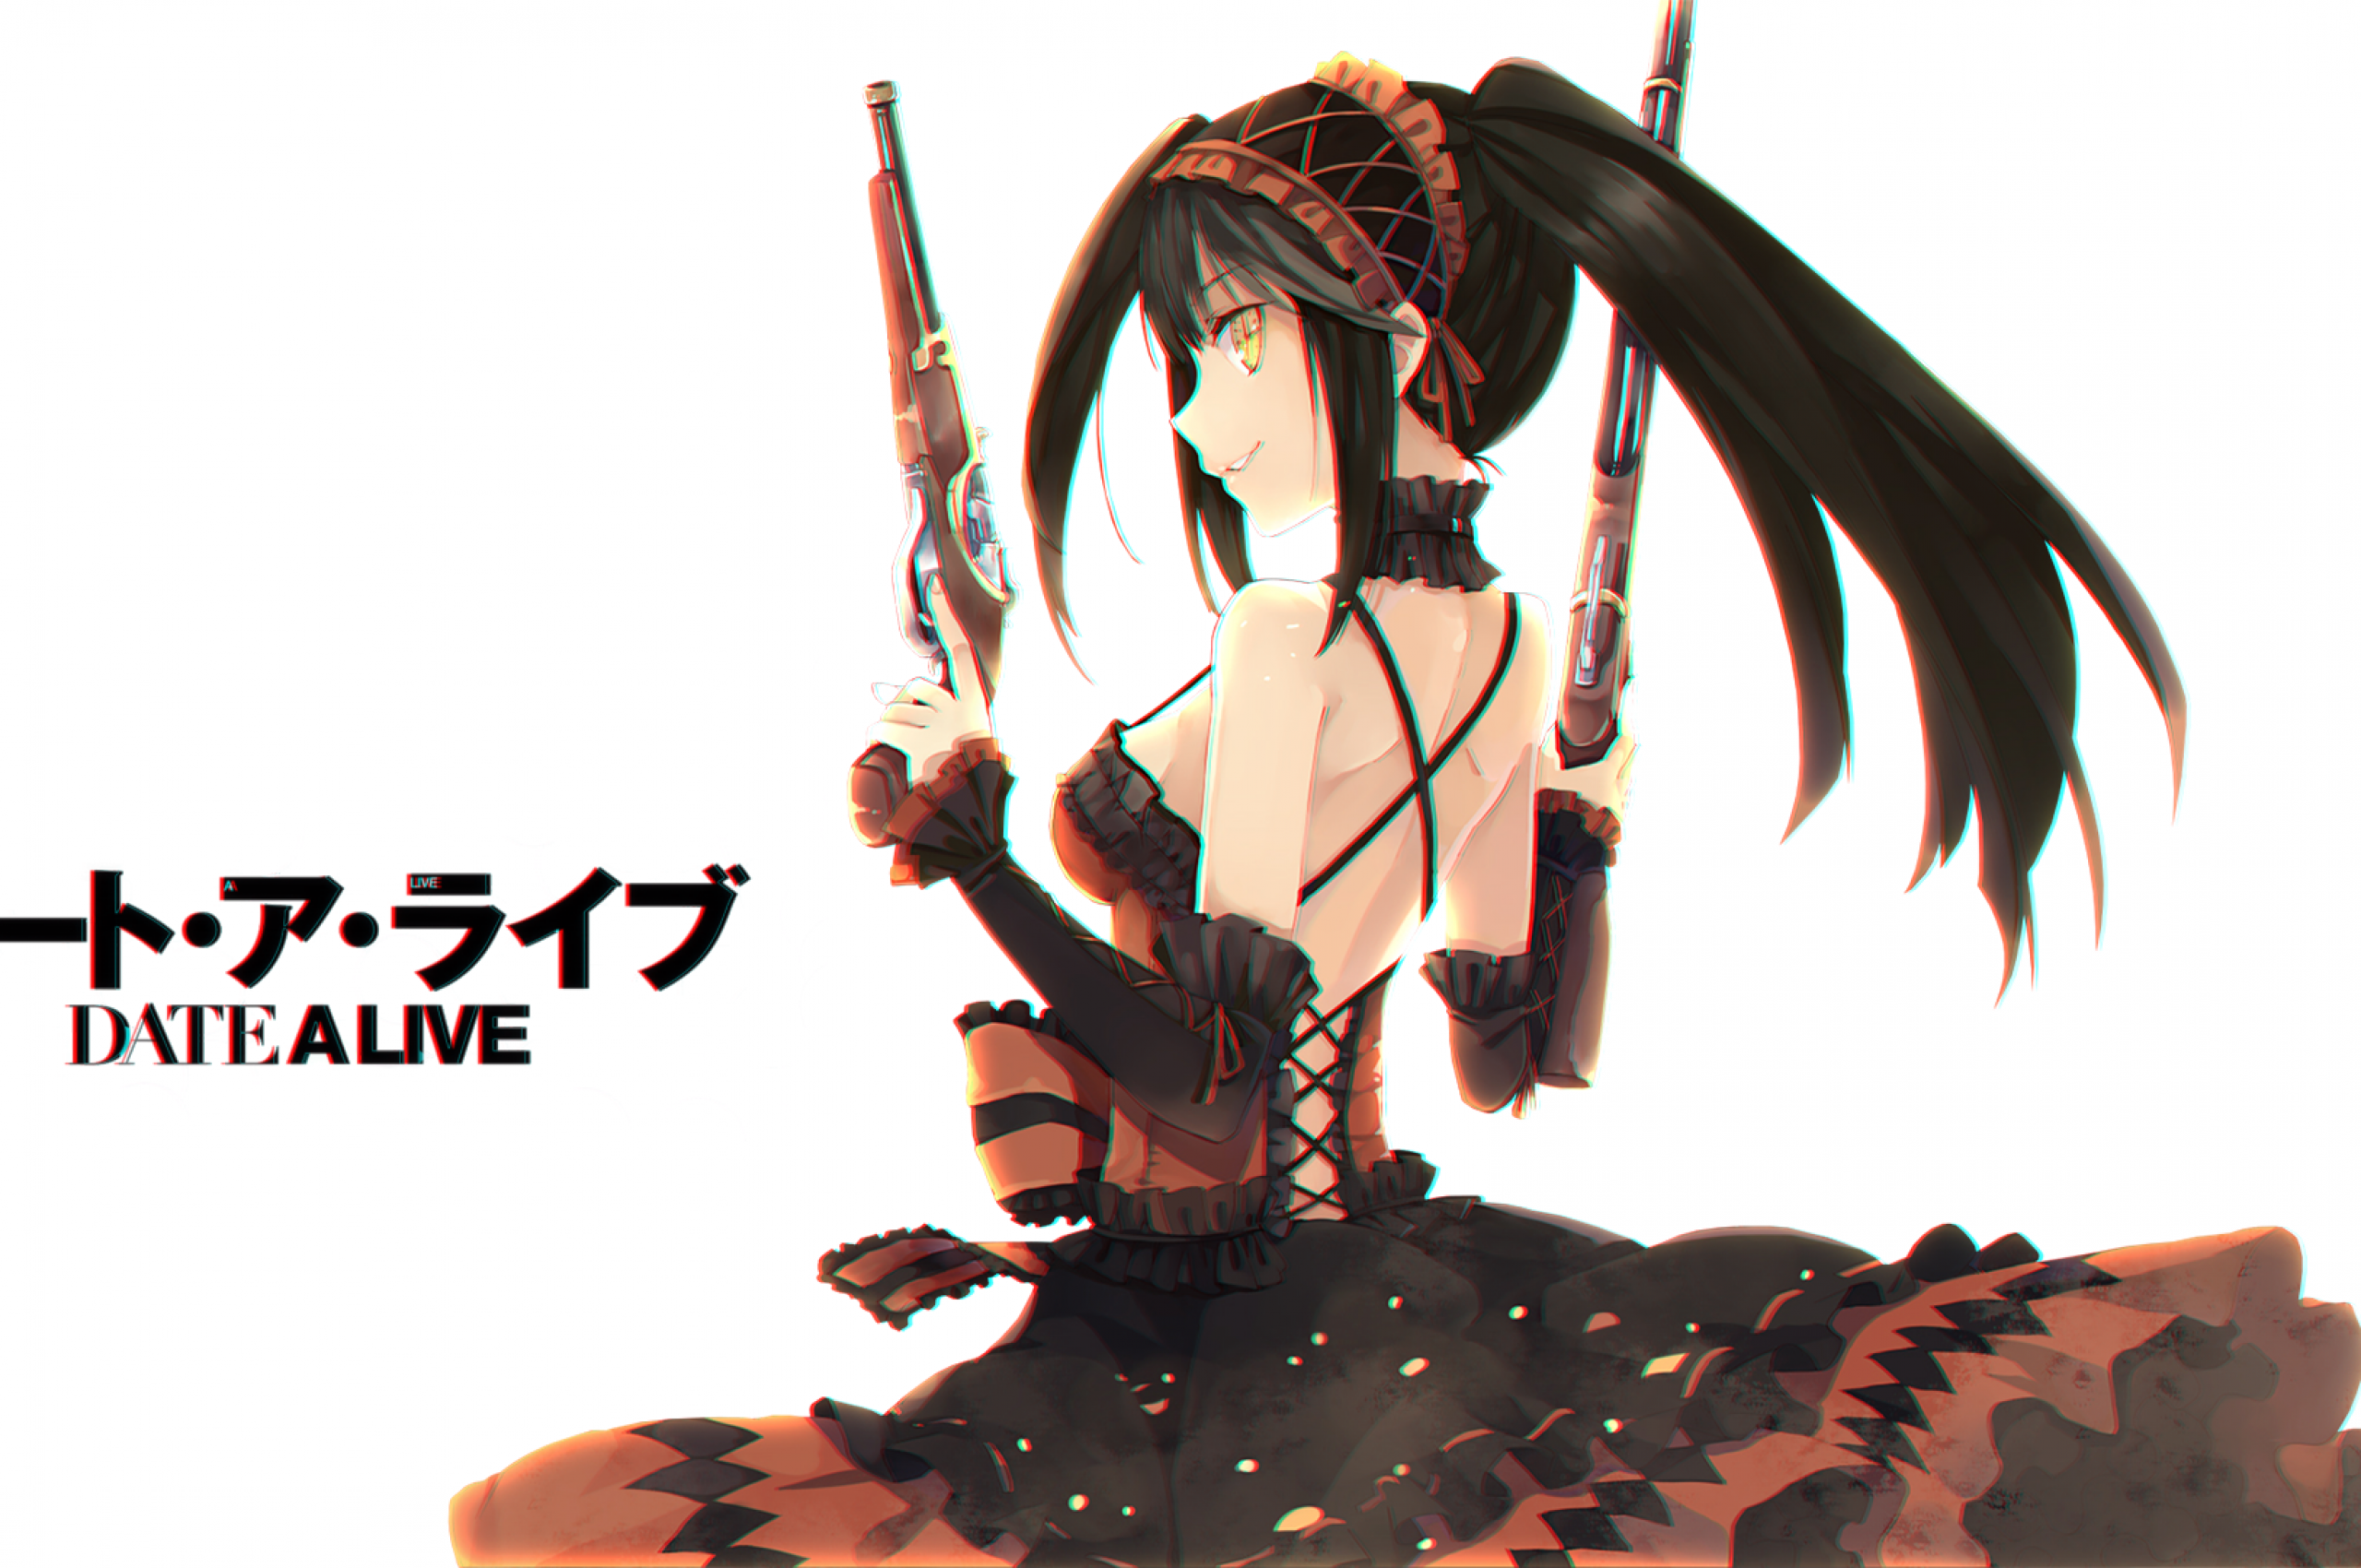 Date A Live, Tokisaki Kurumi, Guns, Dress - Date A Live Kurumi Wallpaper Android - HD Wallpaper 